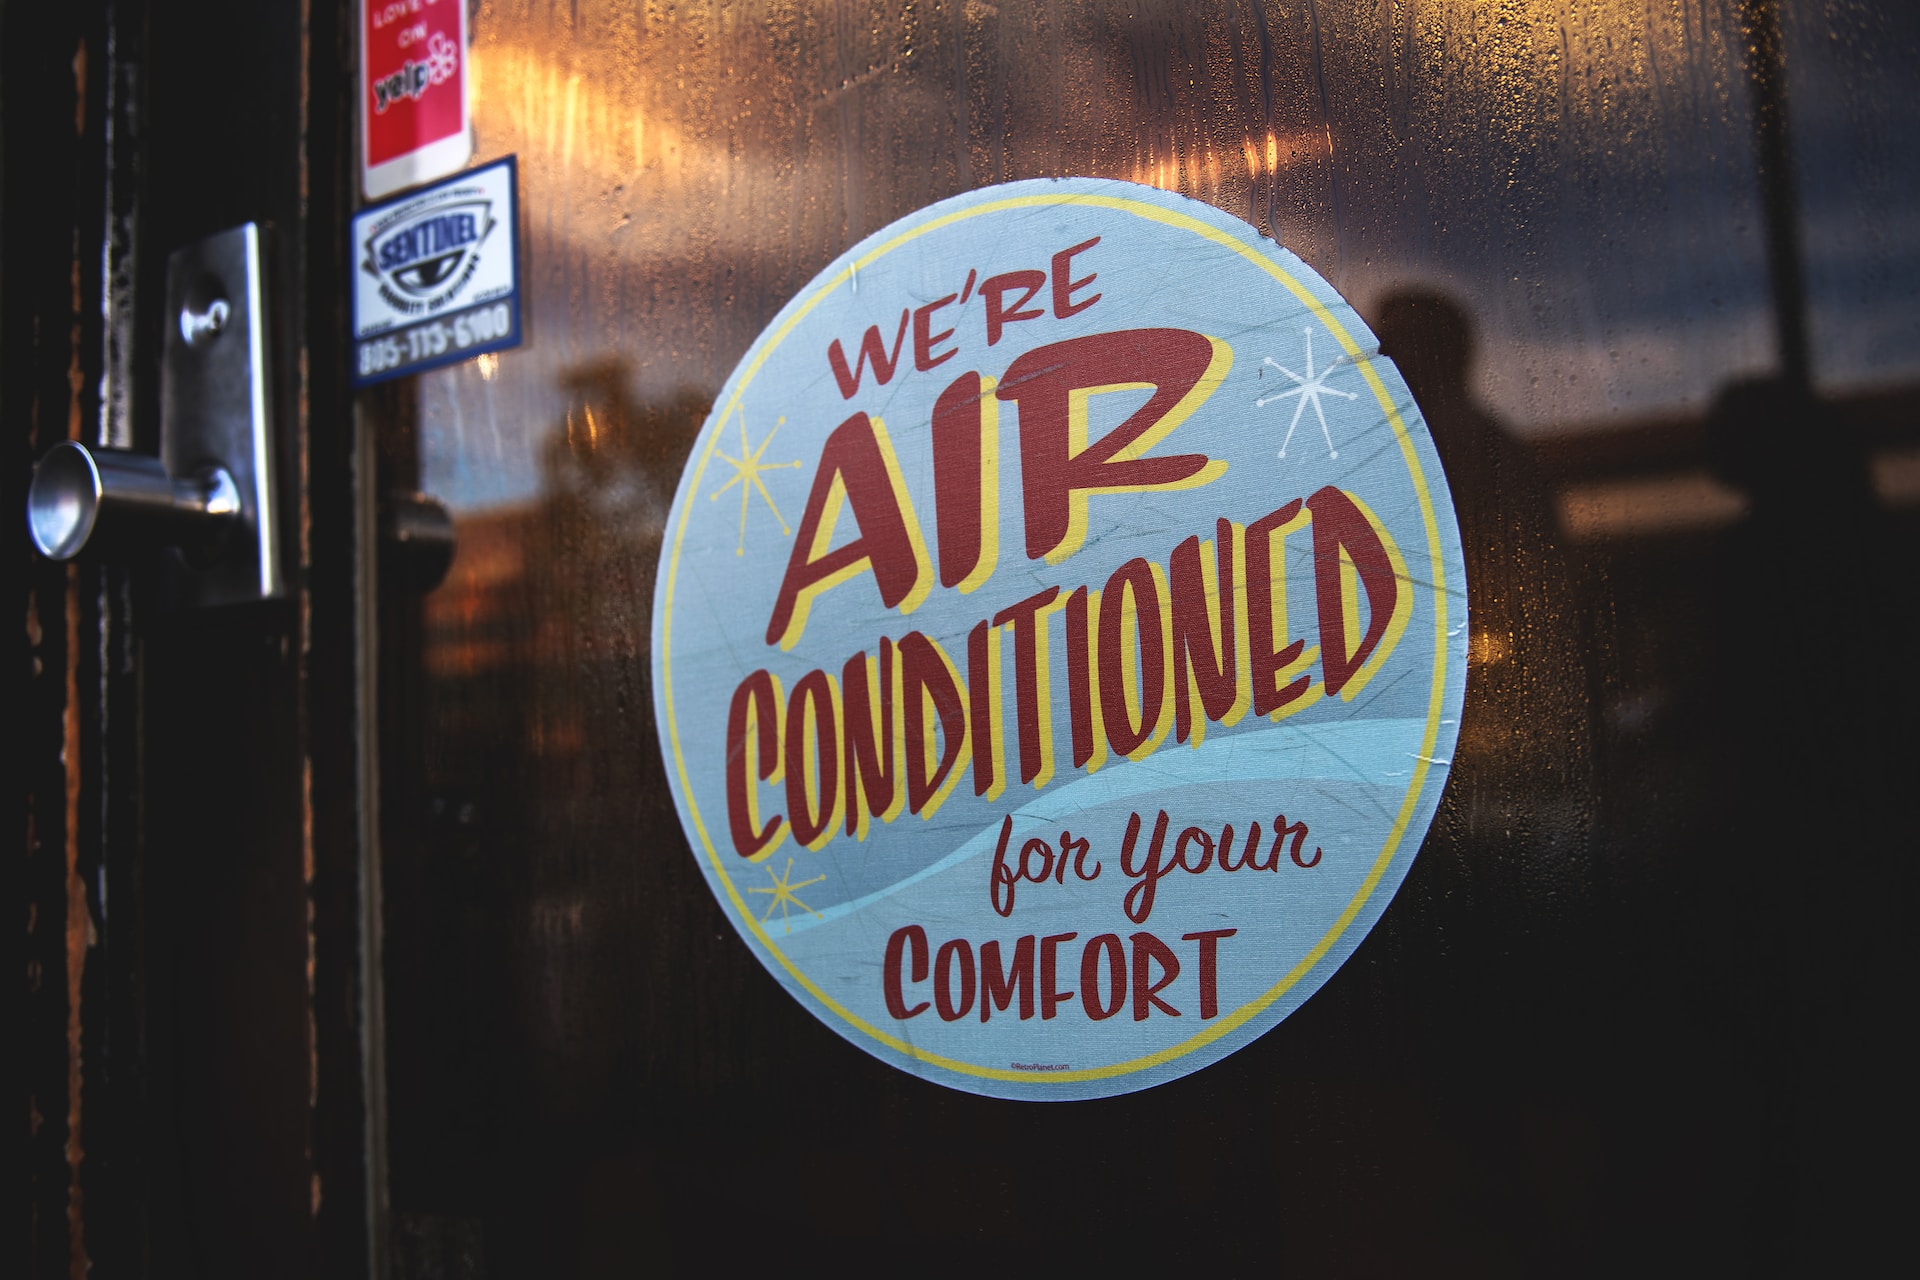 Air conditioner comfort